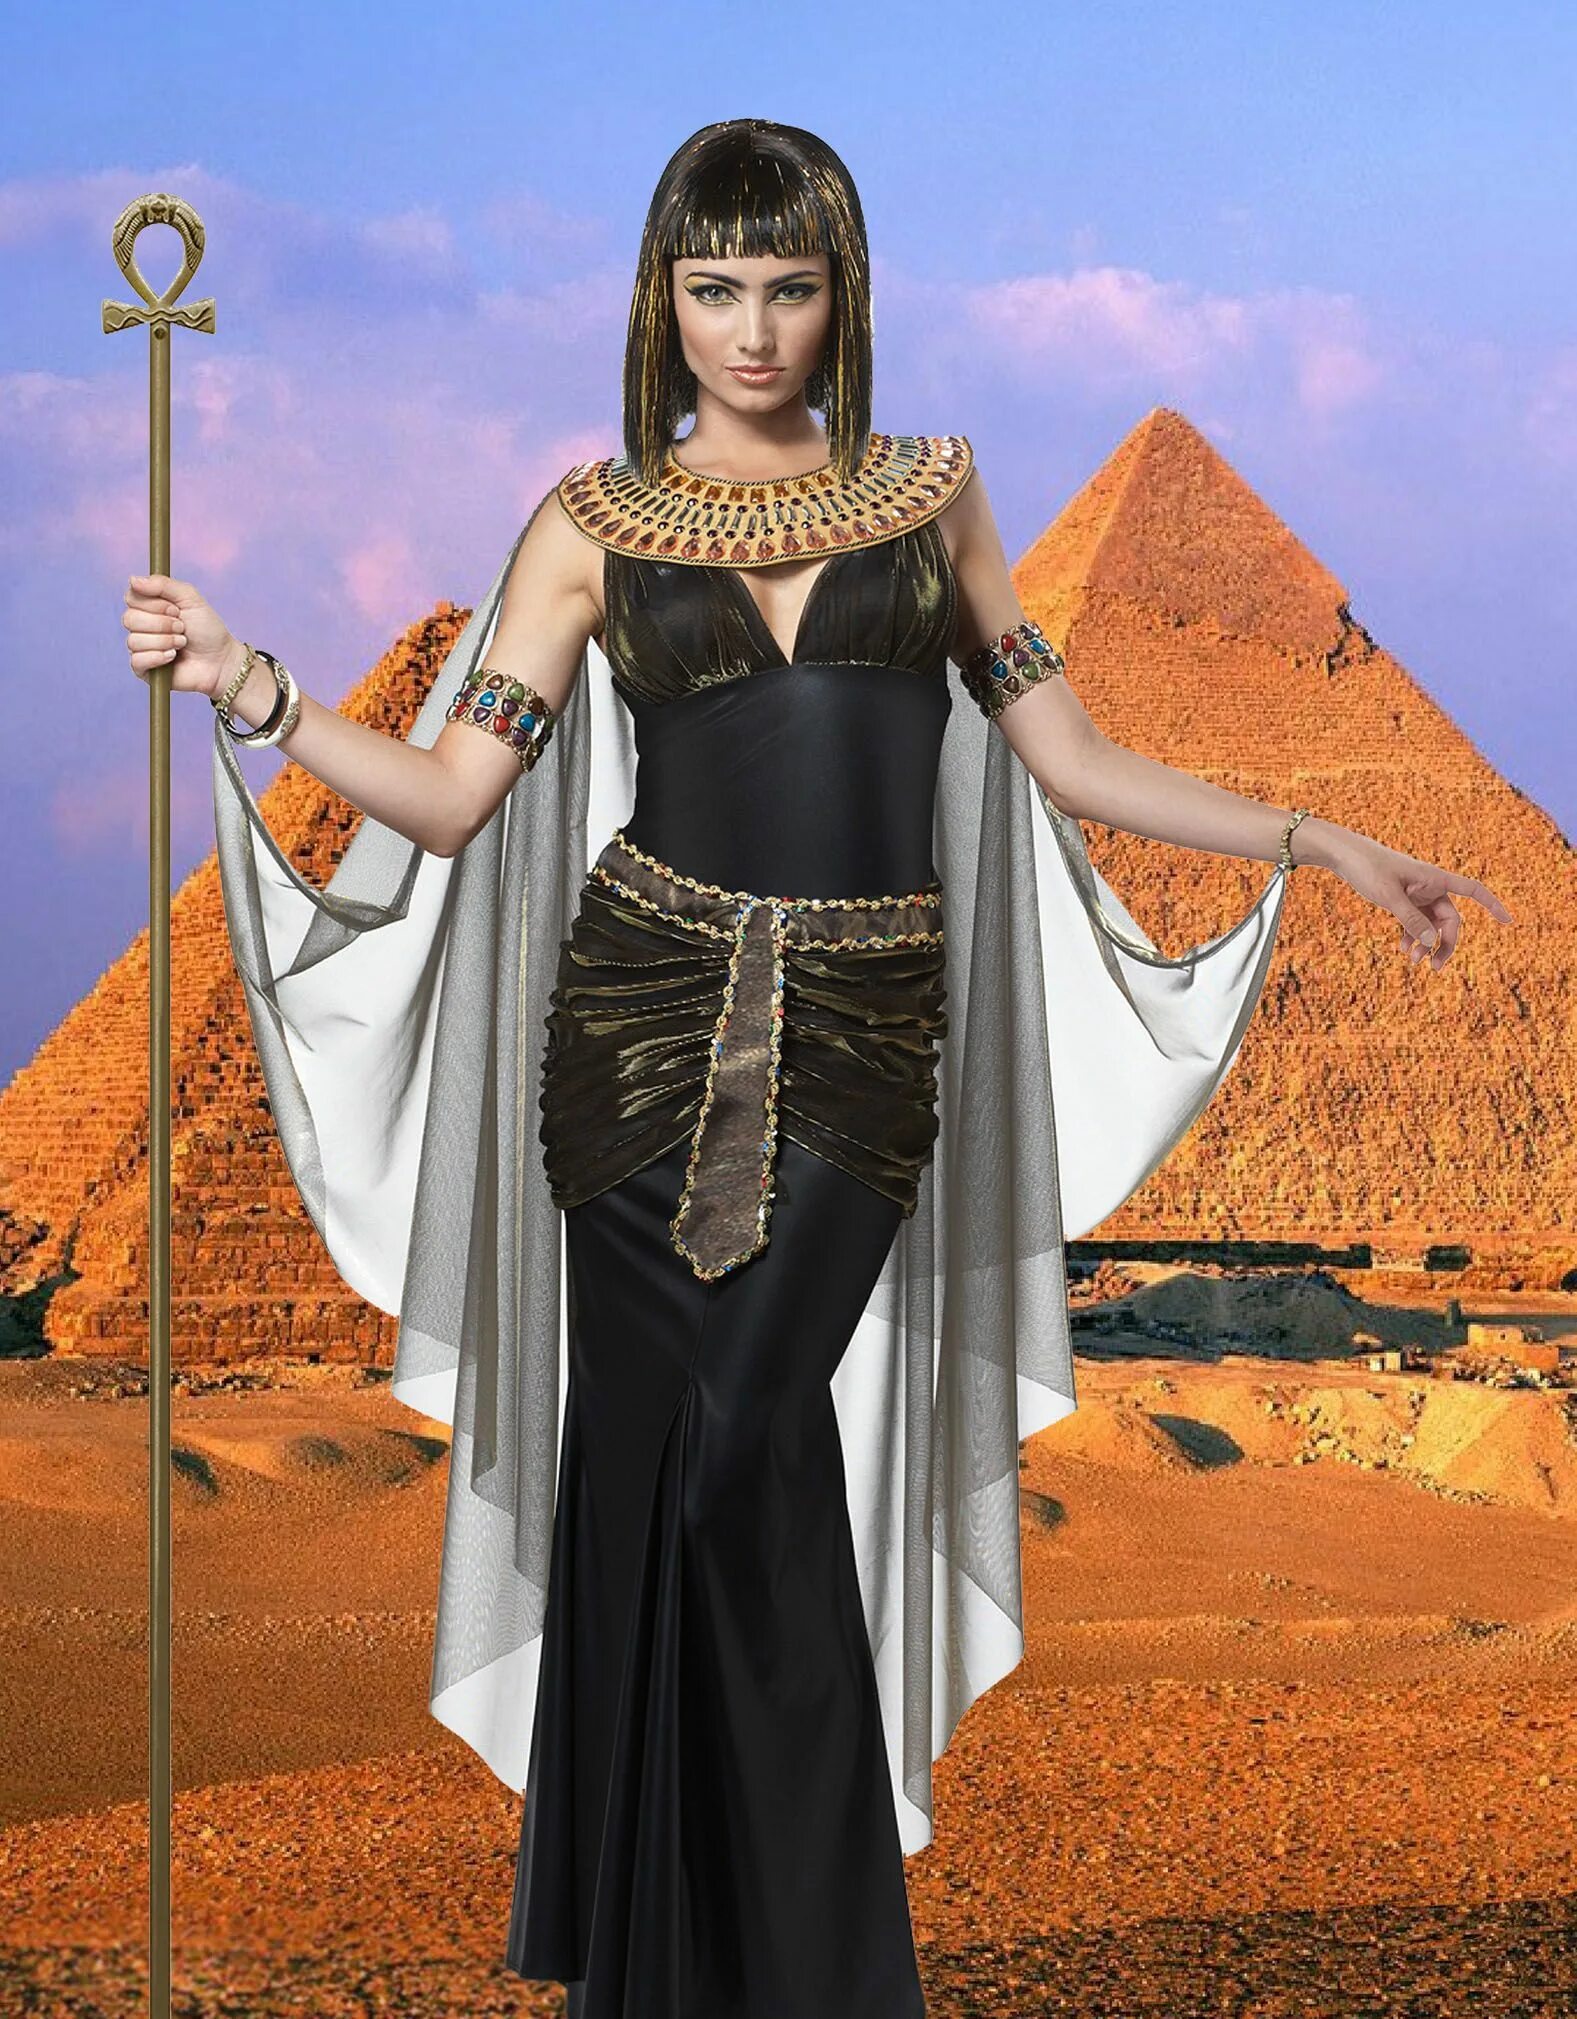 Рост царицы. Клеопатра царица Египта. Клеопатра царица Египта наряд. Египетская царица Клеопатра в полный рост. Царица Египта хаджиспут.